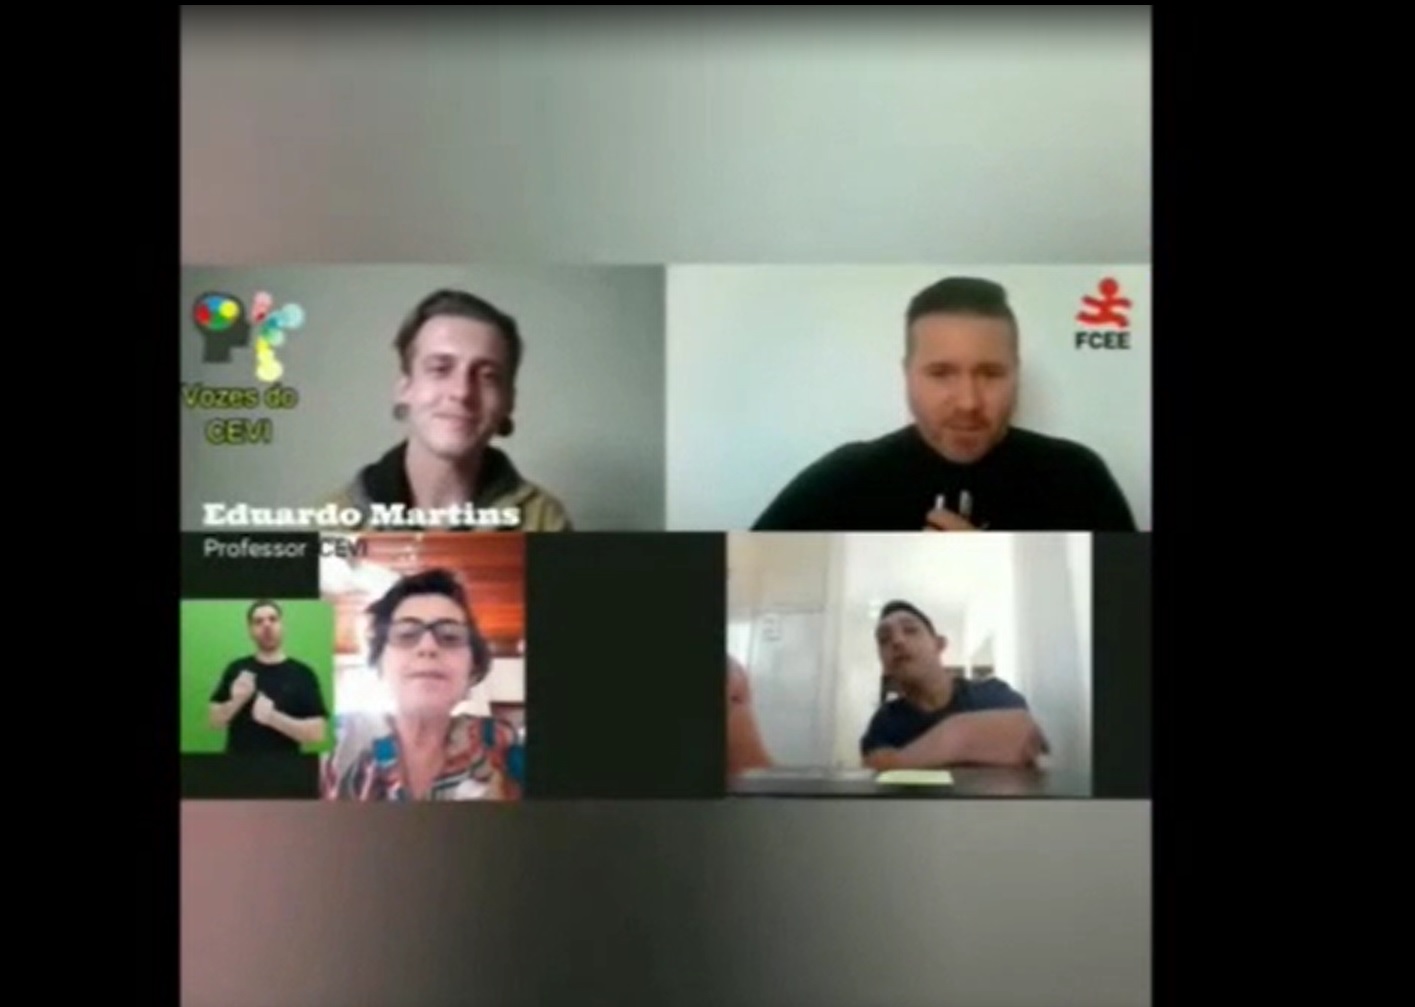 Reprodução de vídeo na internet, imagem de quatro pessoas, tela de computador